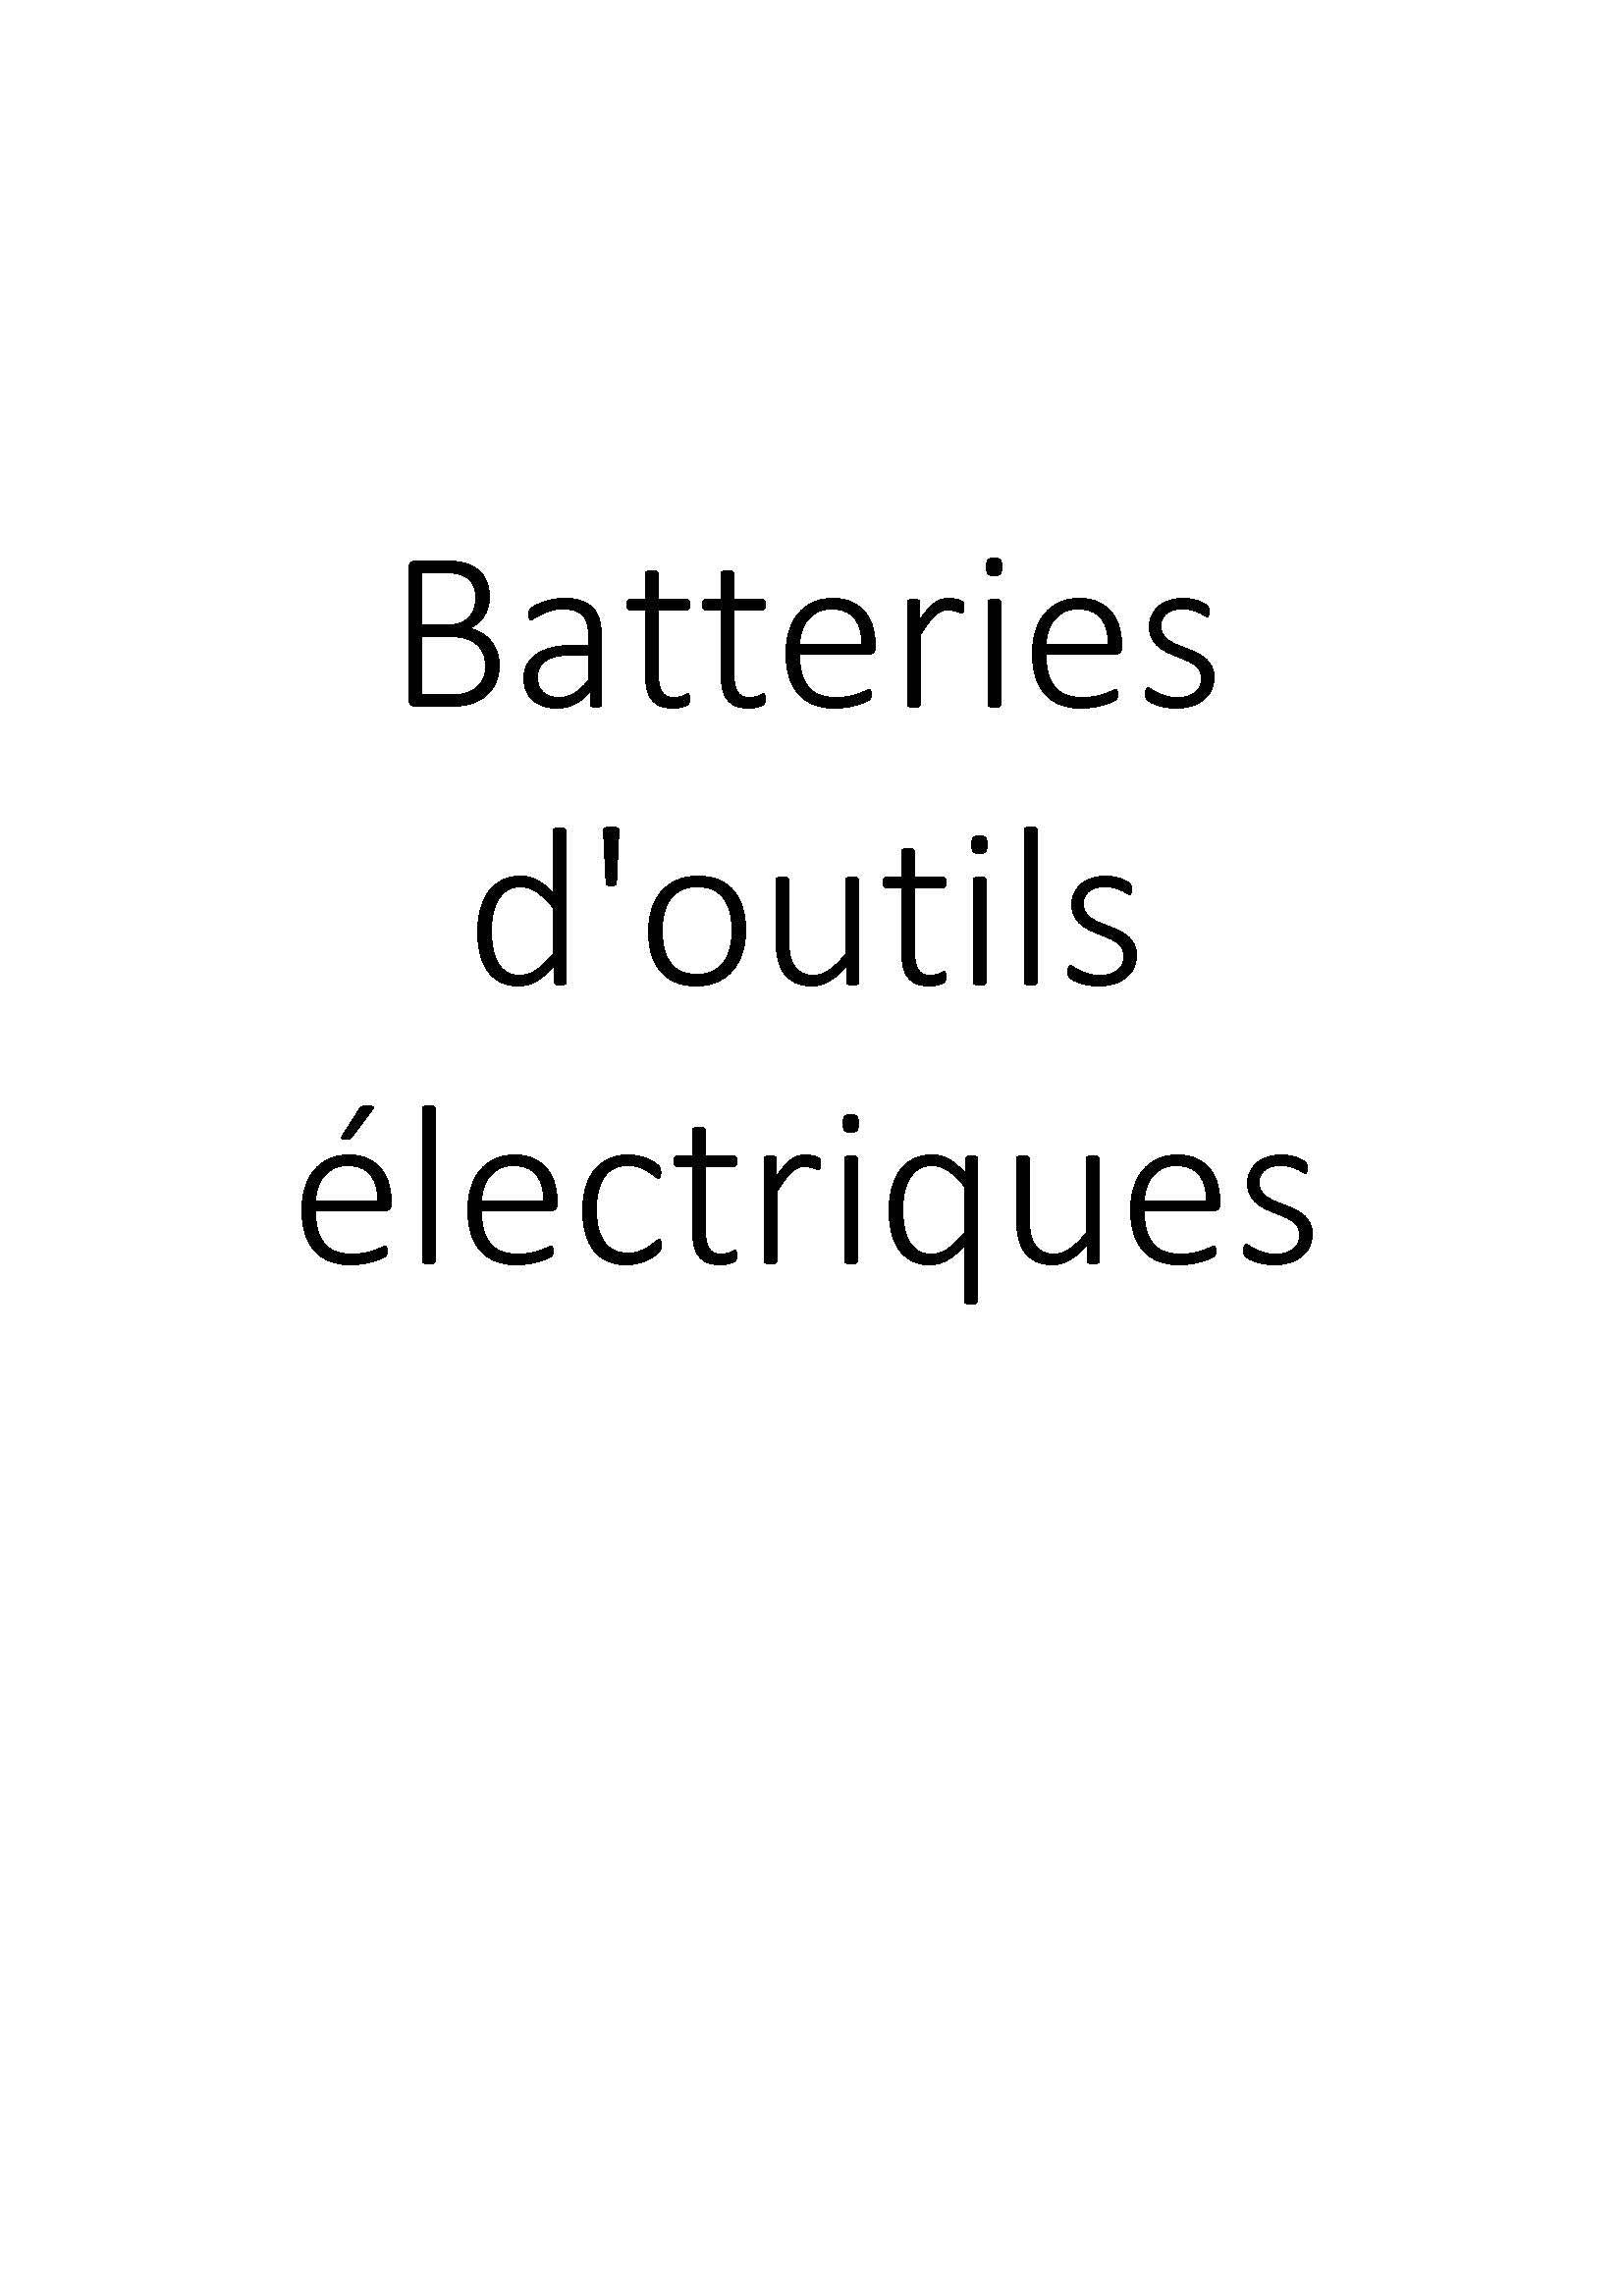 Batteries d'outils électriques clicktofournisseur.com